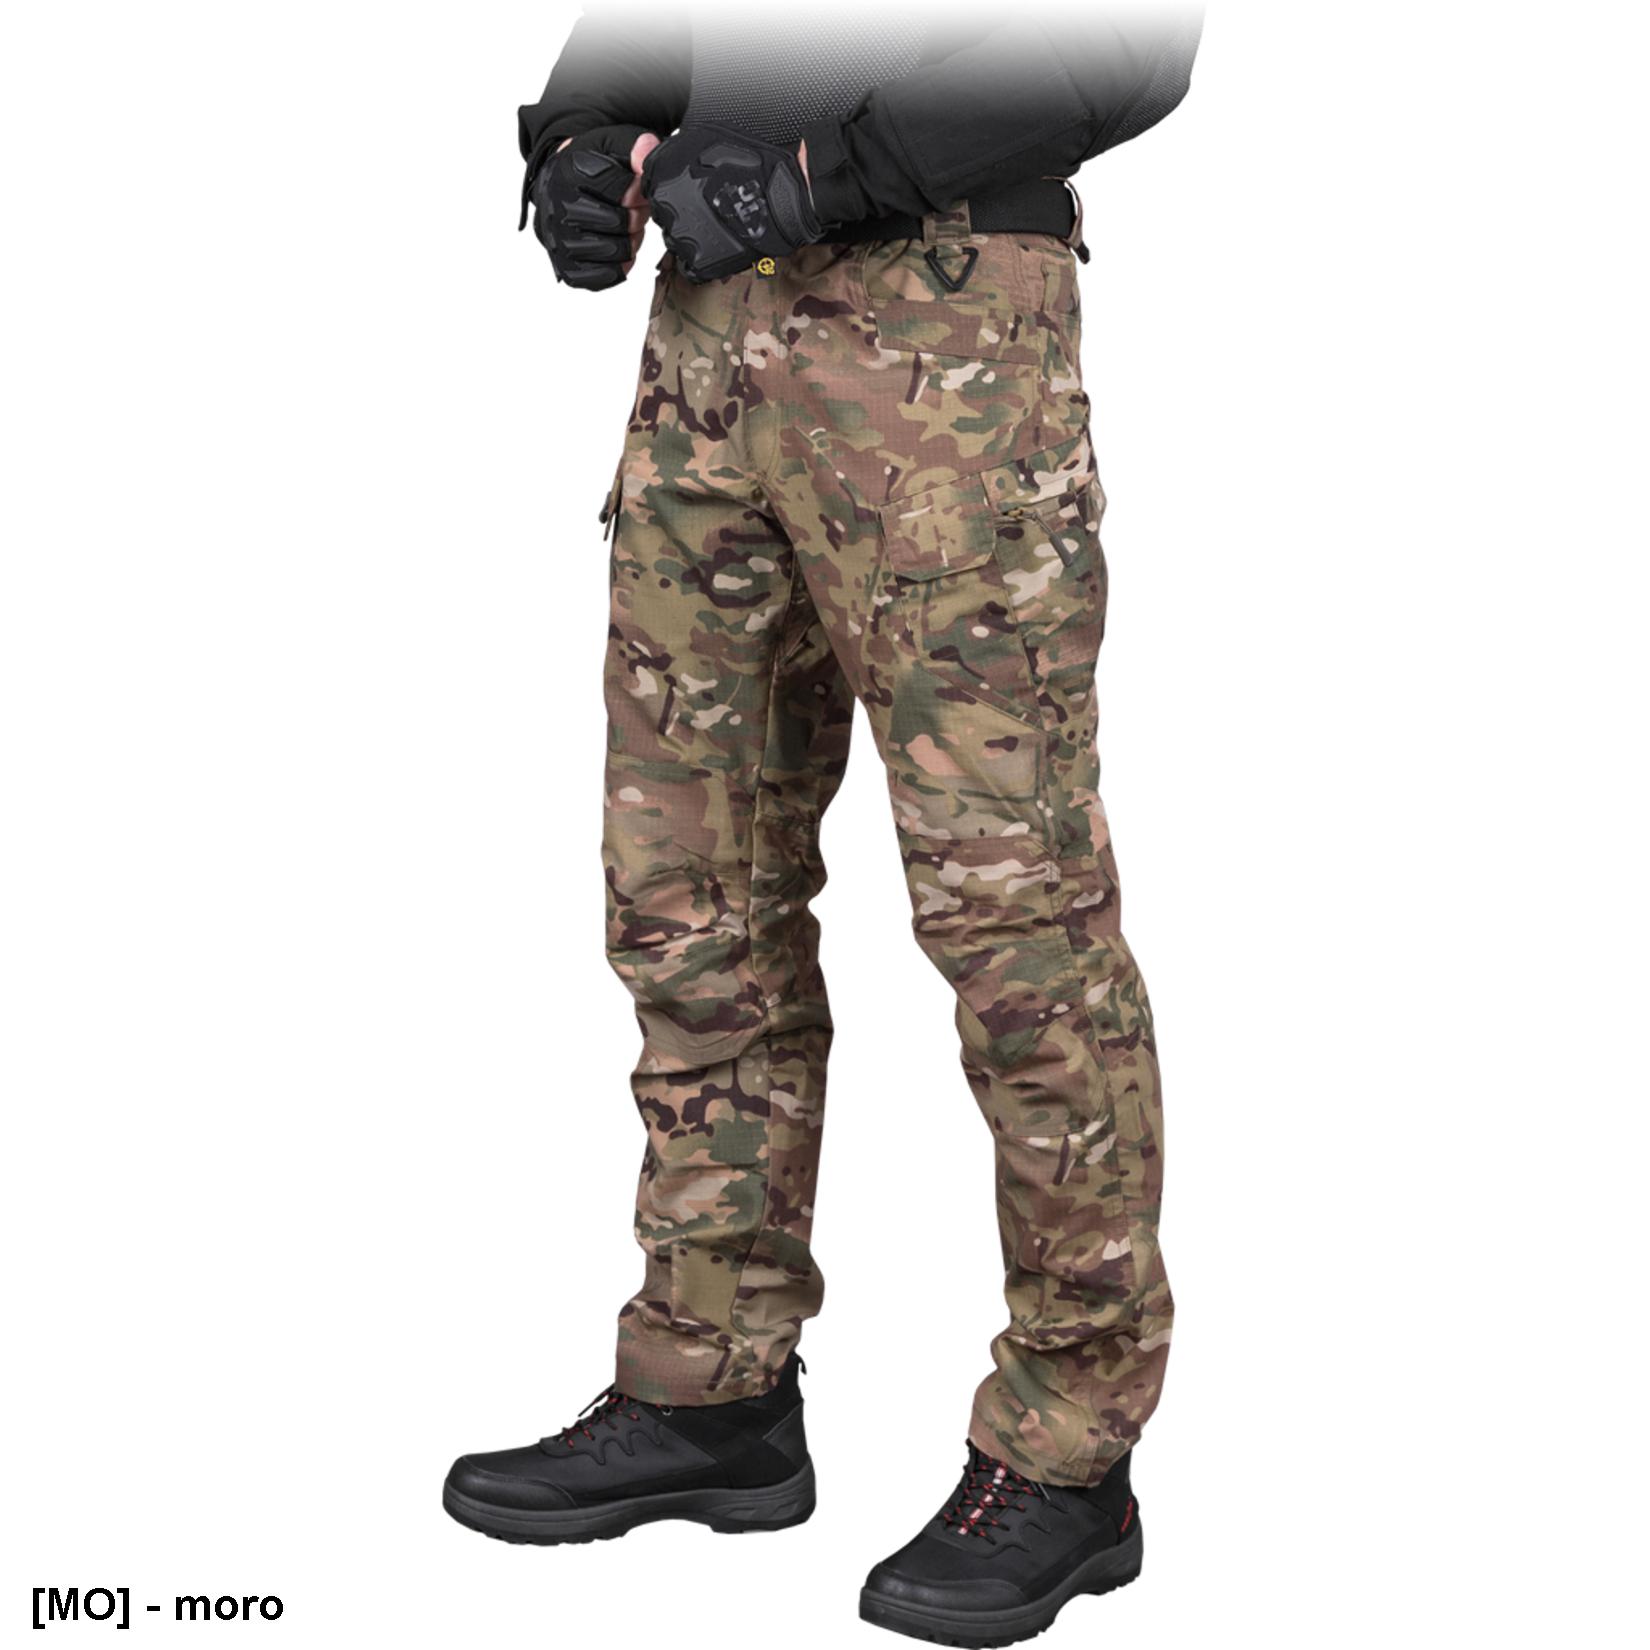 TG-SLOB - spodnie ochronne do pasa typu Tactical Guard, 6 kieszeni, 65% poliester, 35% bawełna, 210-220 g/m² - M-3XL.